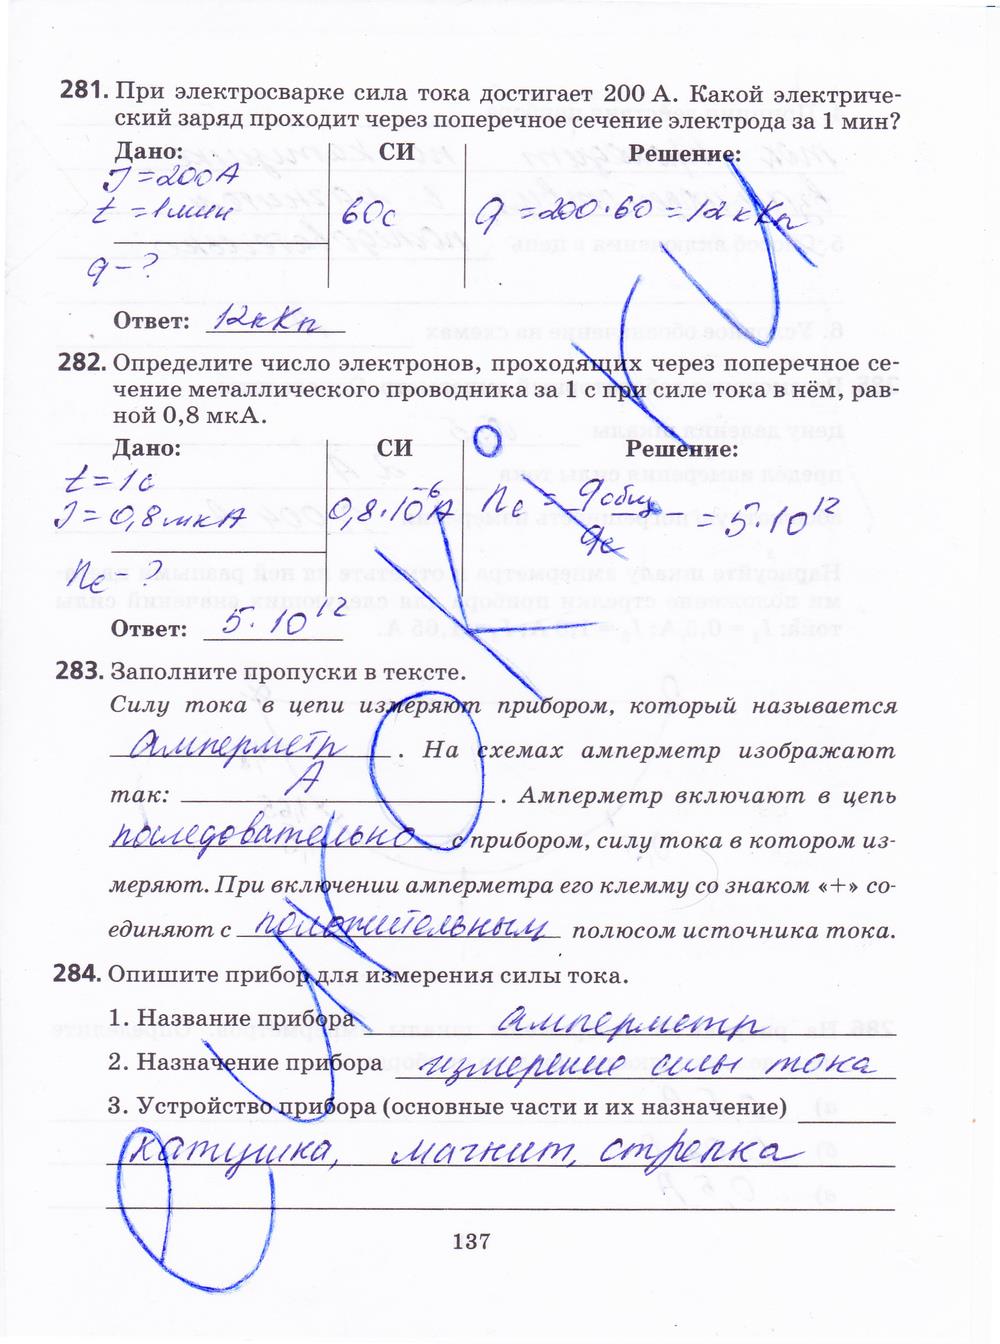 гдз 8 класс рабочая тетрадь страница 137 физика Пурышева, Важеевская